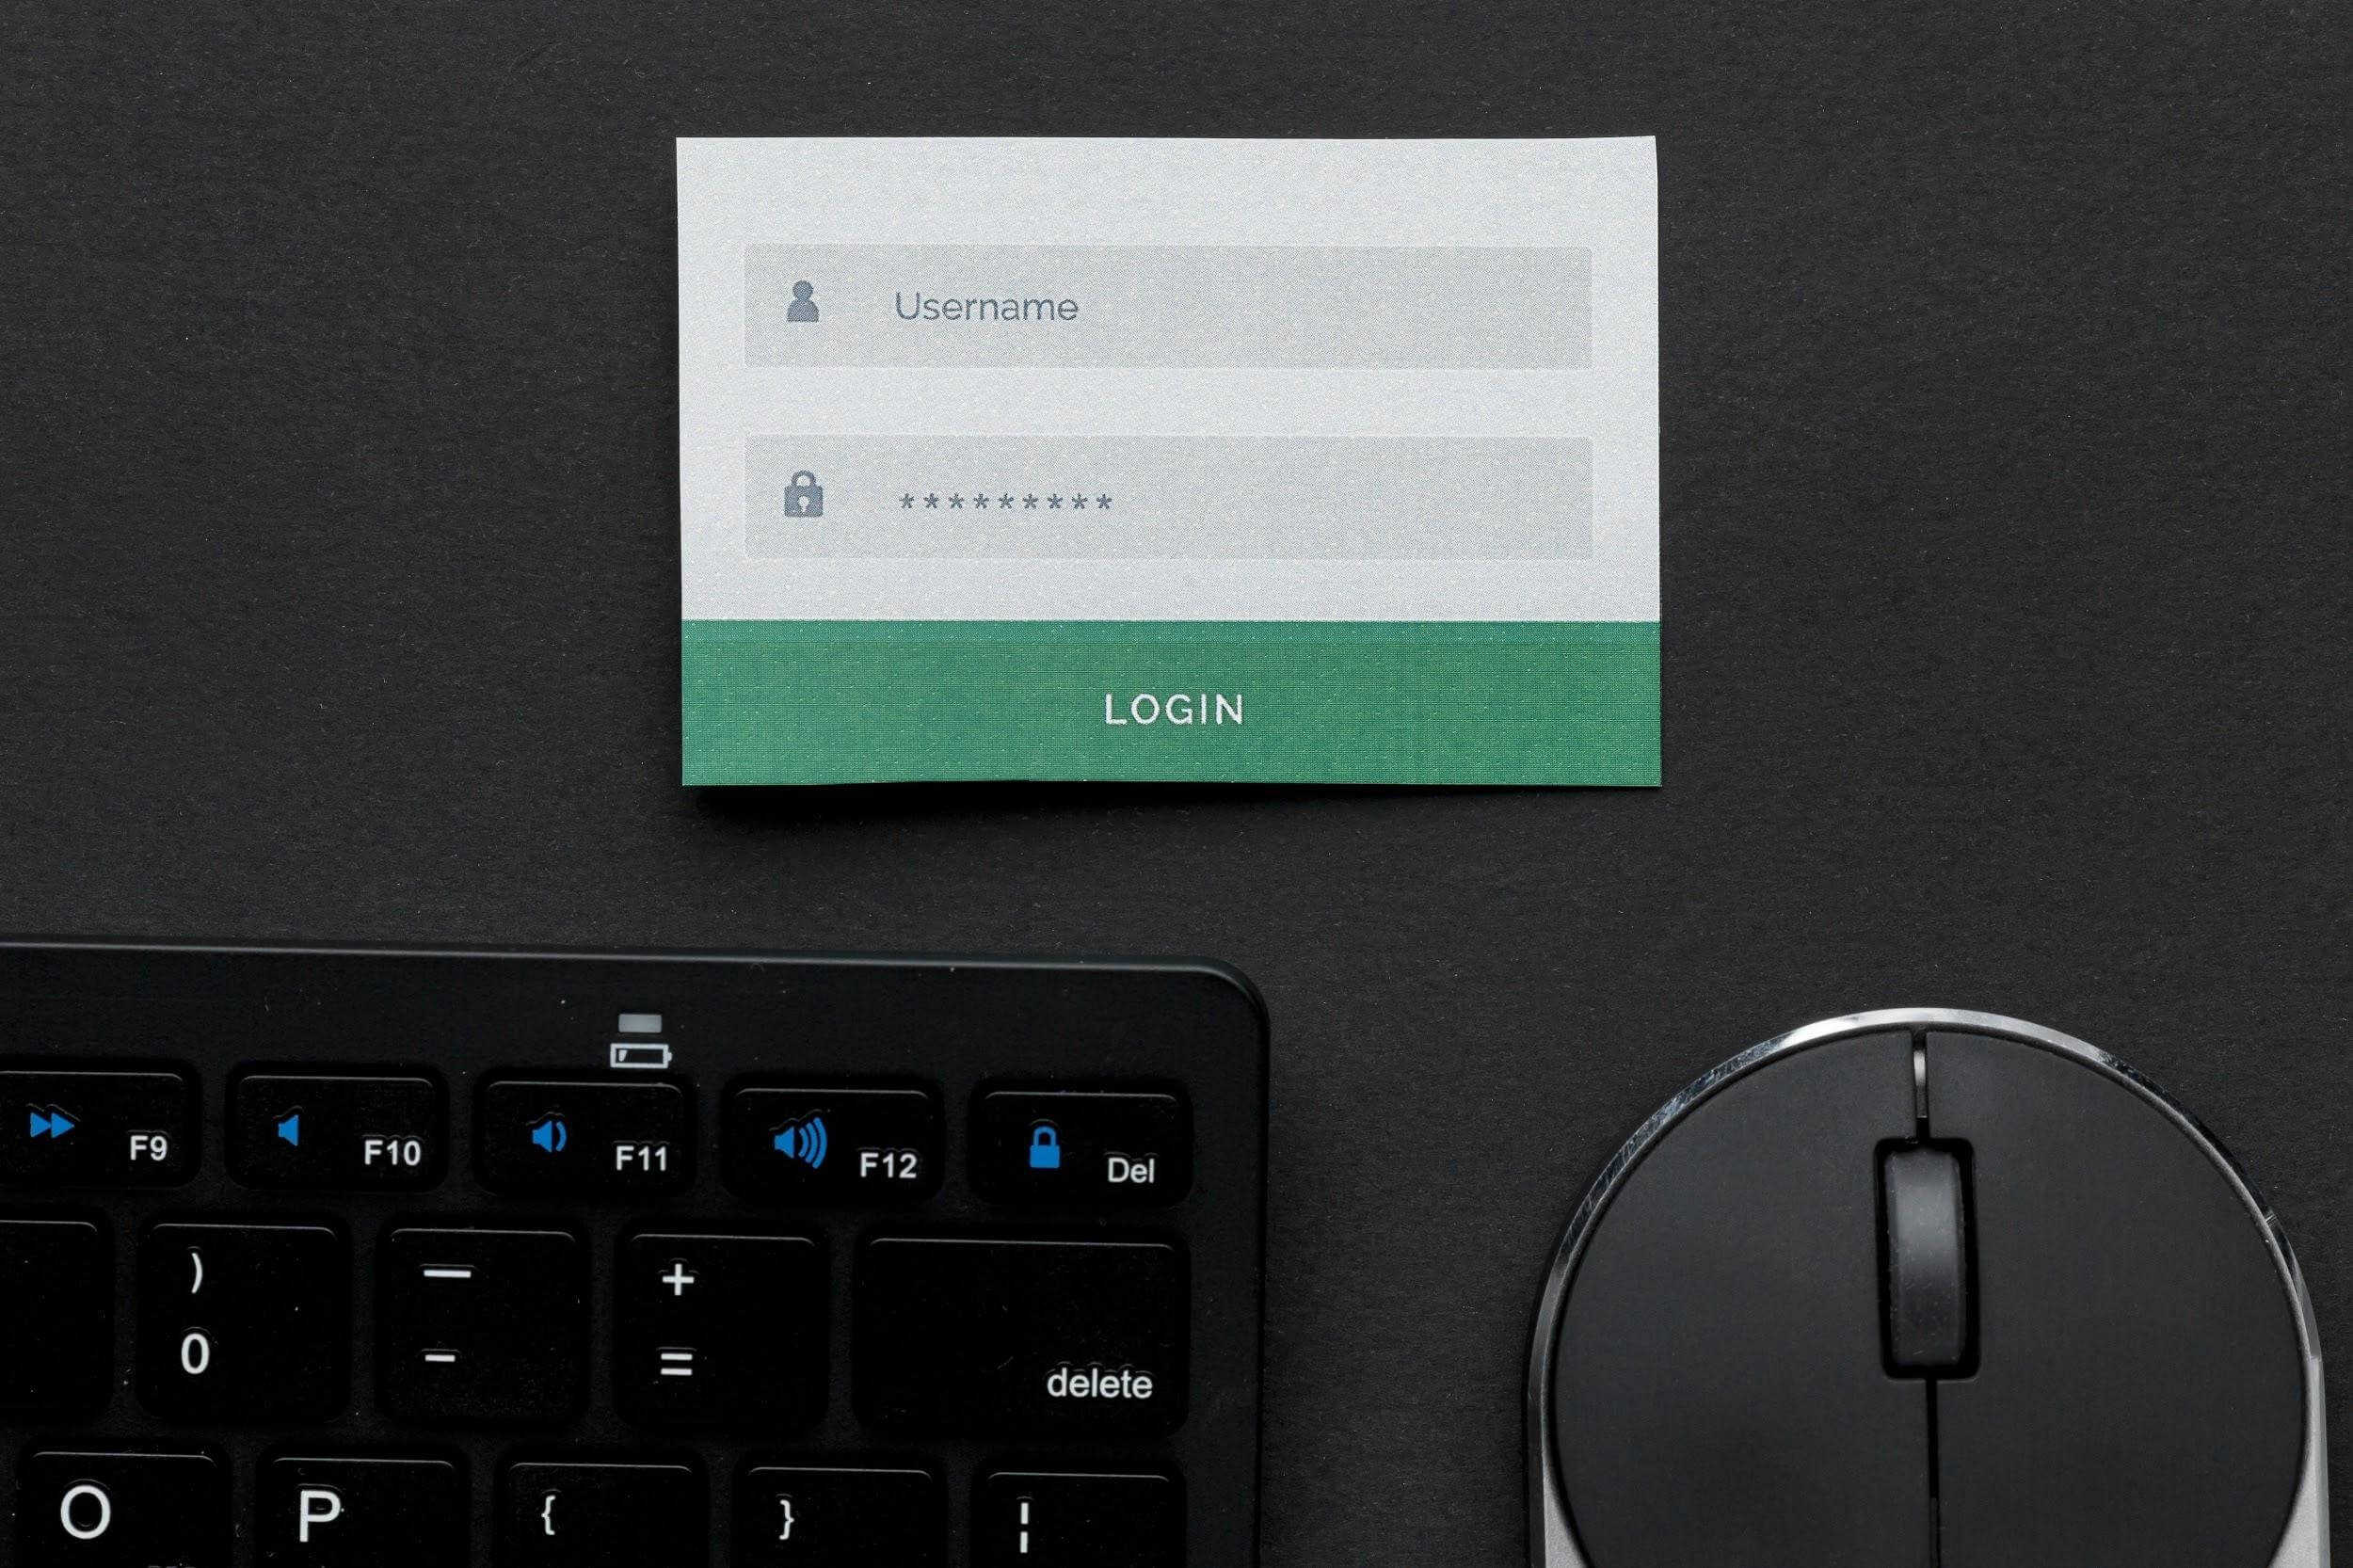 Caixa de texto com as palavras “username” e “password”, acima de um teclado e mouse. 